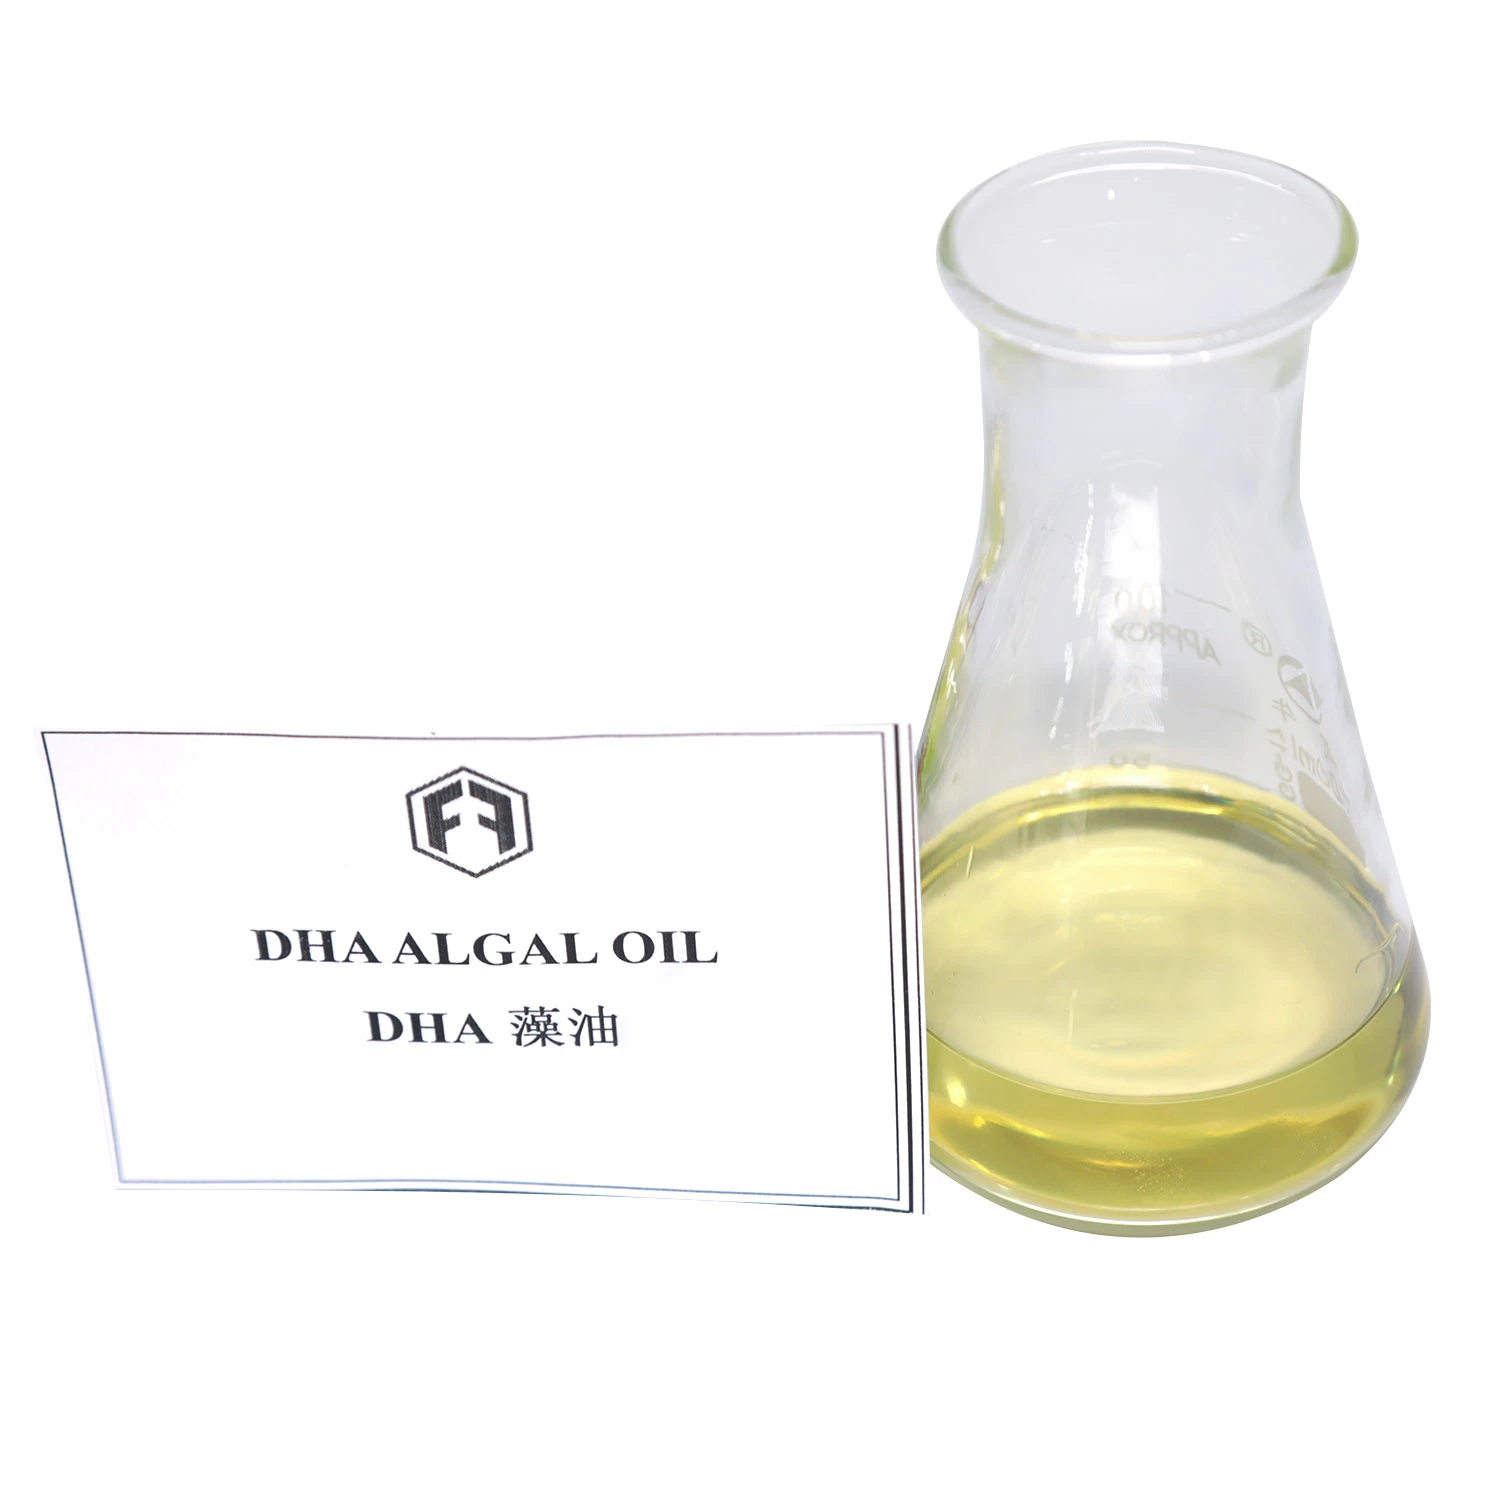 Alta qualidade Material bruto ômega 3 Óleo de peixe DHA/DHA Algas óleo para os cuidados de saúde